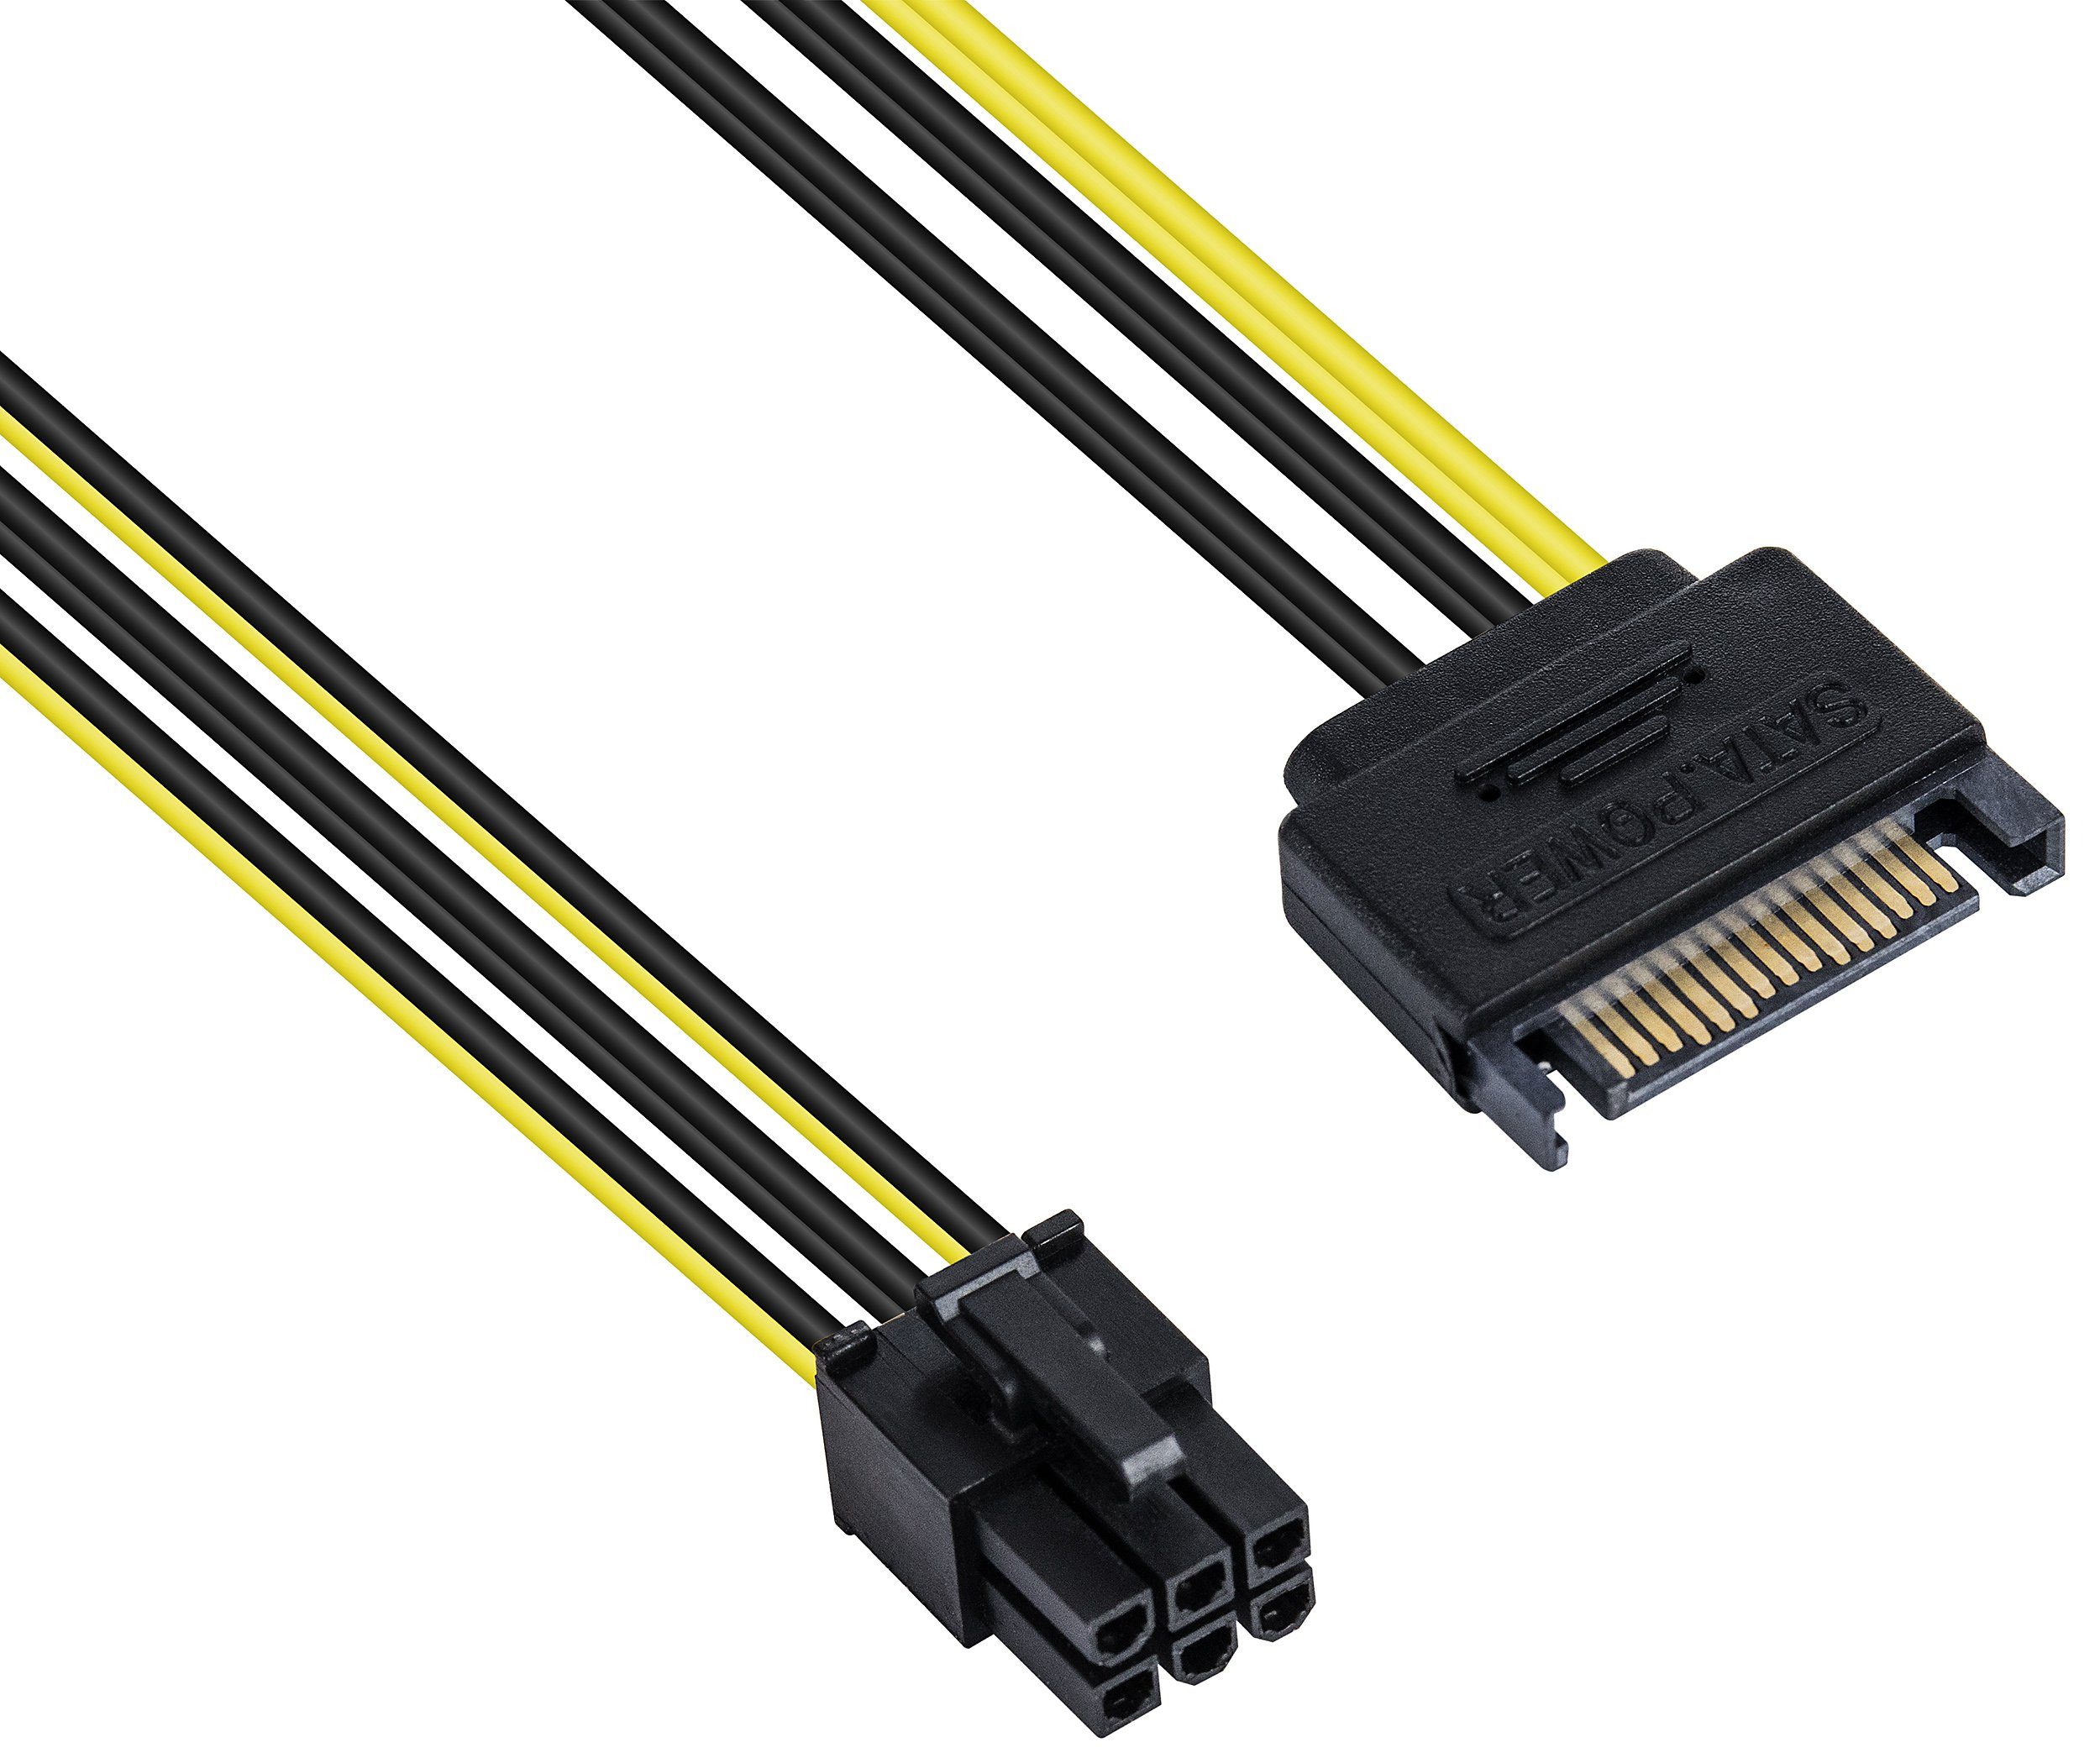 Poppstar Grafikkarten-Kabel, PCIe 6 Pin Stecker, 15 Pin SATA Buchse (20 cm), Einfaches Verbinden von Grafikkarte und Stromversorgung